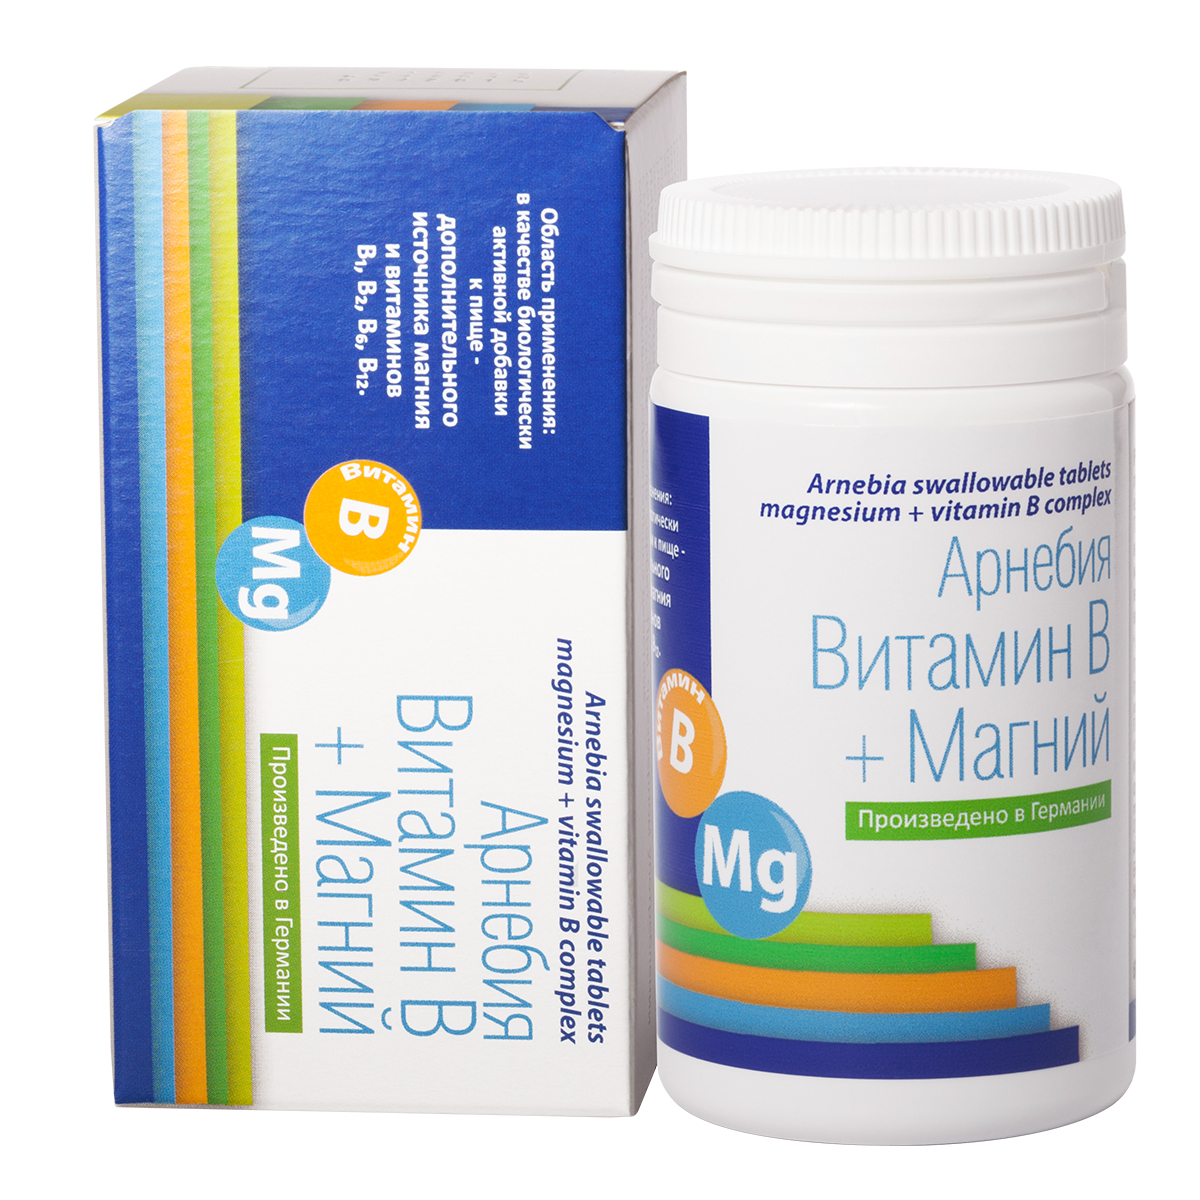 Arnebia Витамин В + магний таблетки 60 штук (Arnebia, БАДы)